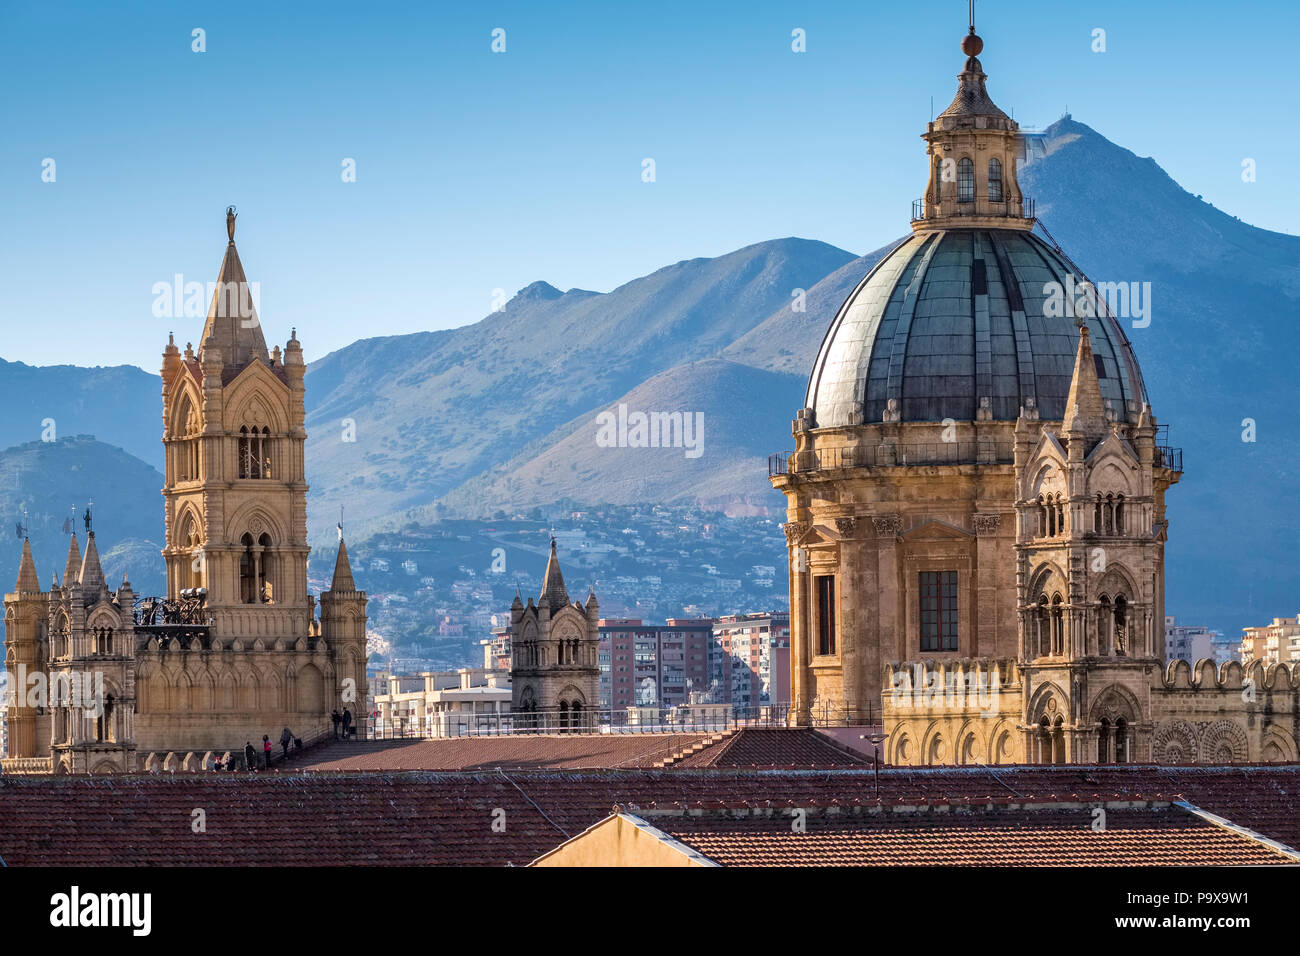 Sicile, Italie - Skyline de Palerme, Sicile, Europe, montrant le dôme de la cathédrale de Palerme et de l'architecture Banque D'Images